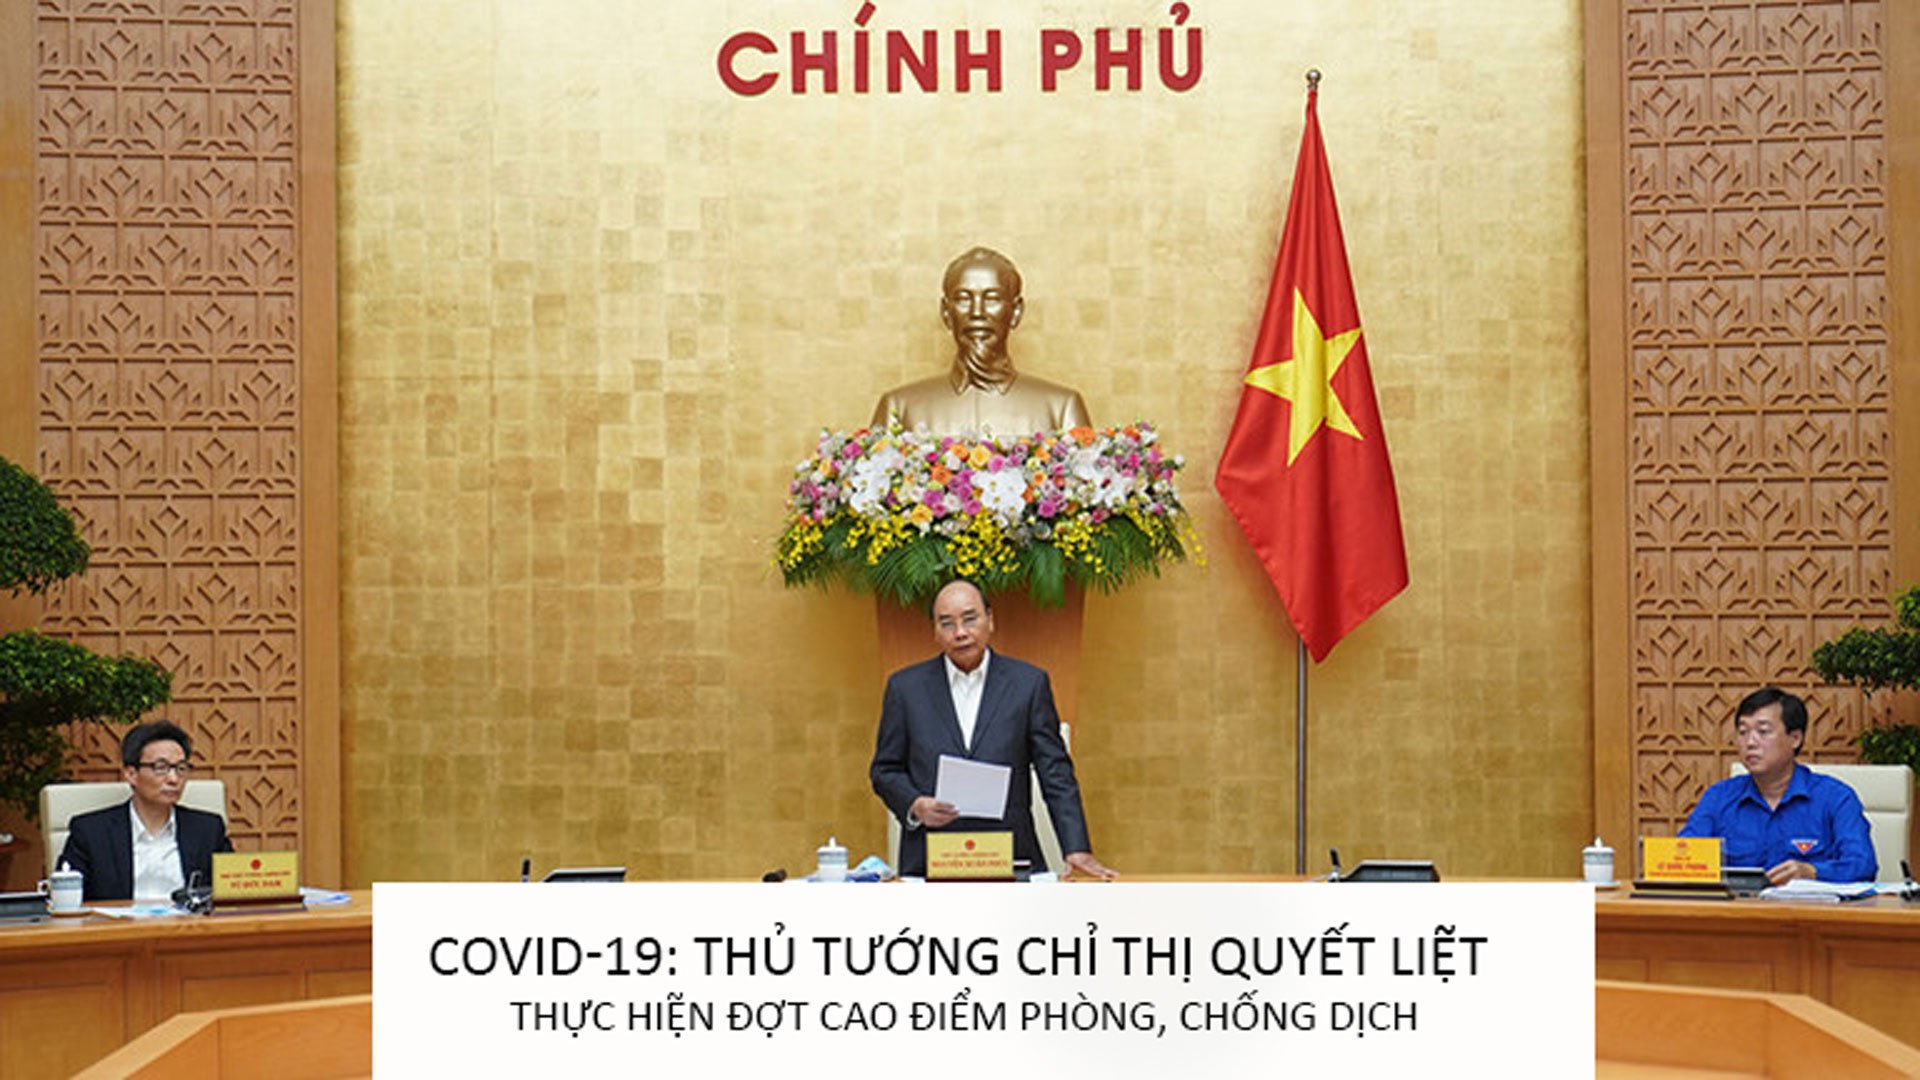 Covid-19: Thủ tướng chỉ thị quyết liệt thực hiện đợt cao điểm phòng, chống dịch